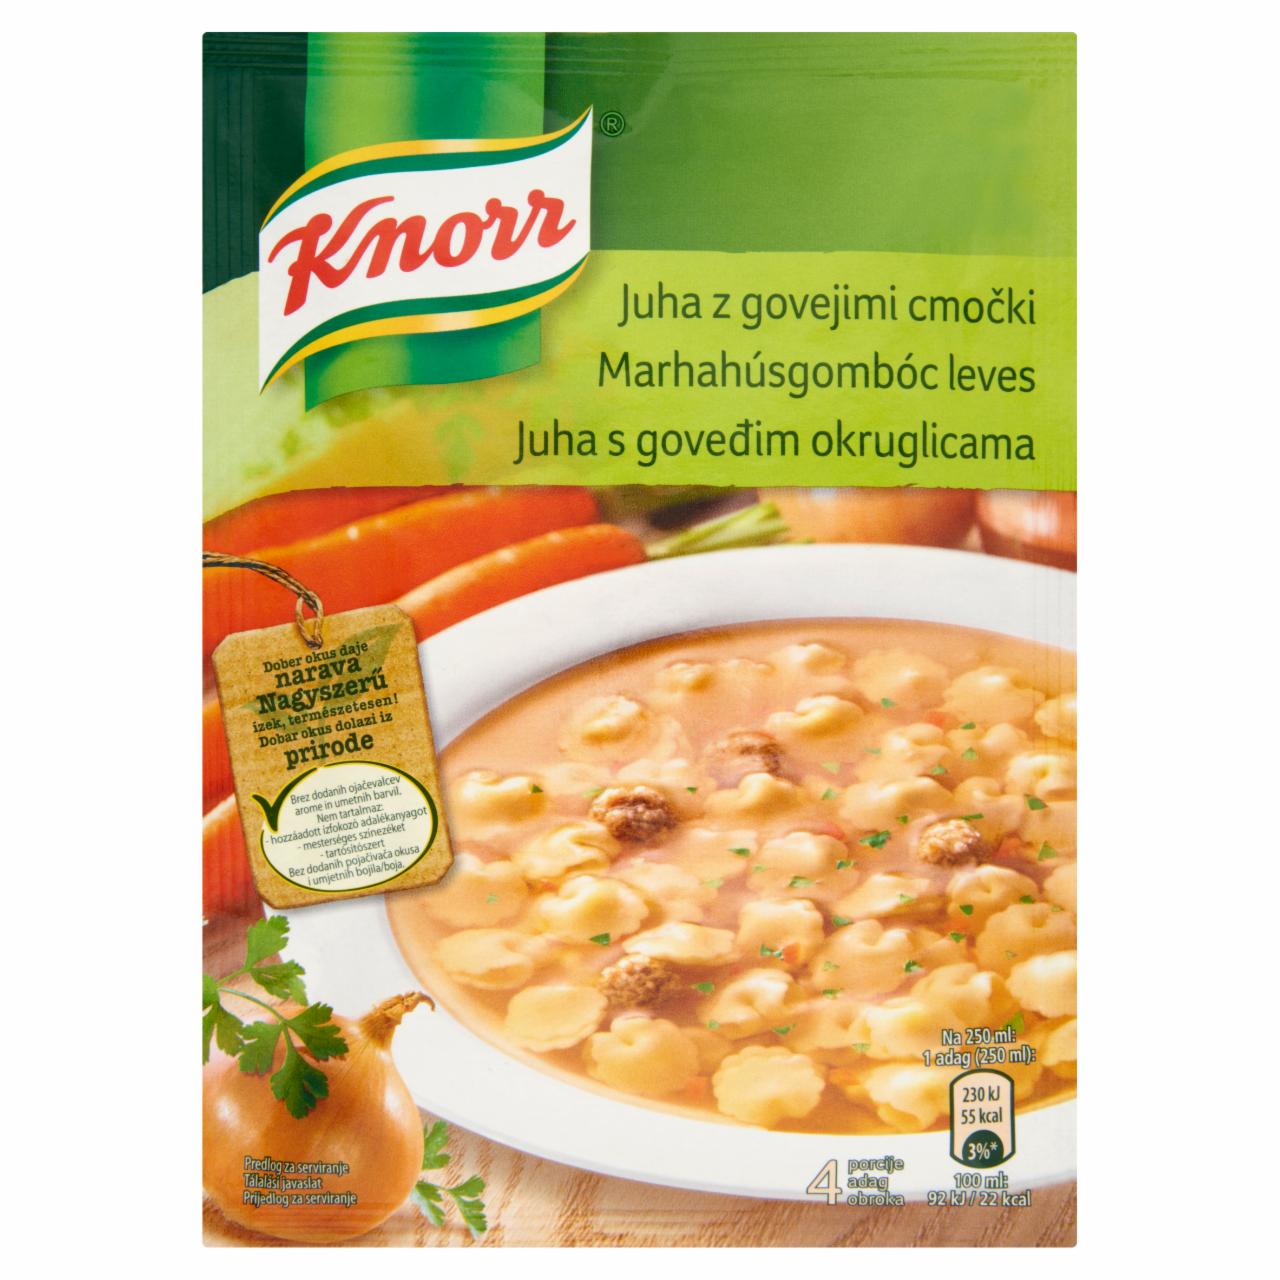 Képek - Knorr marhahúsgombóc leves 64 g